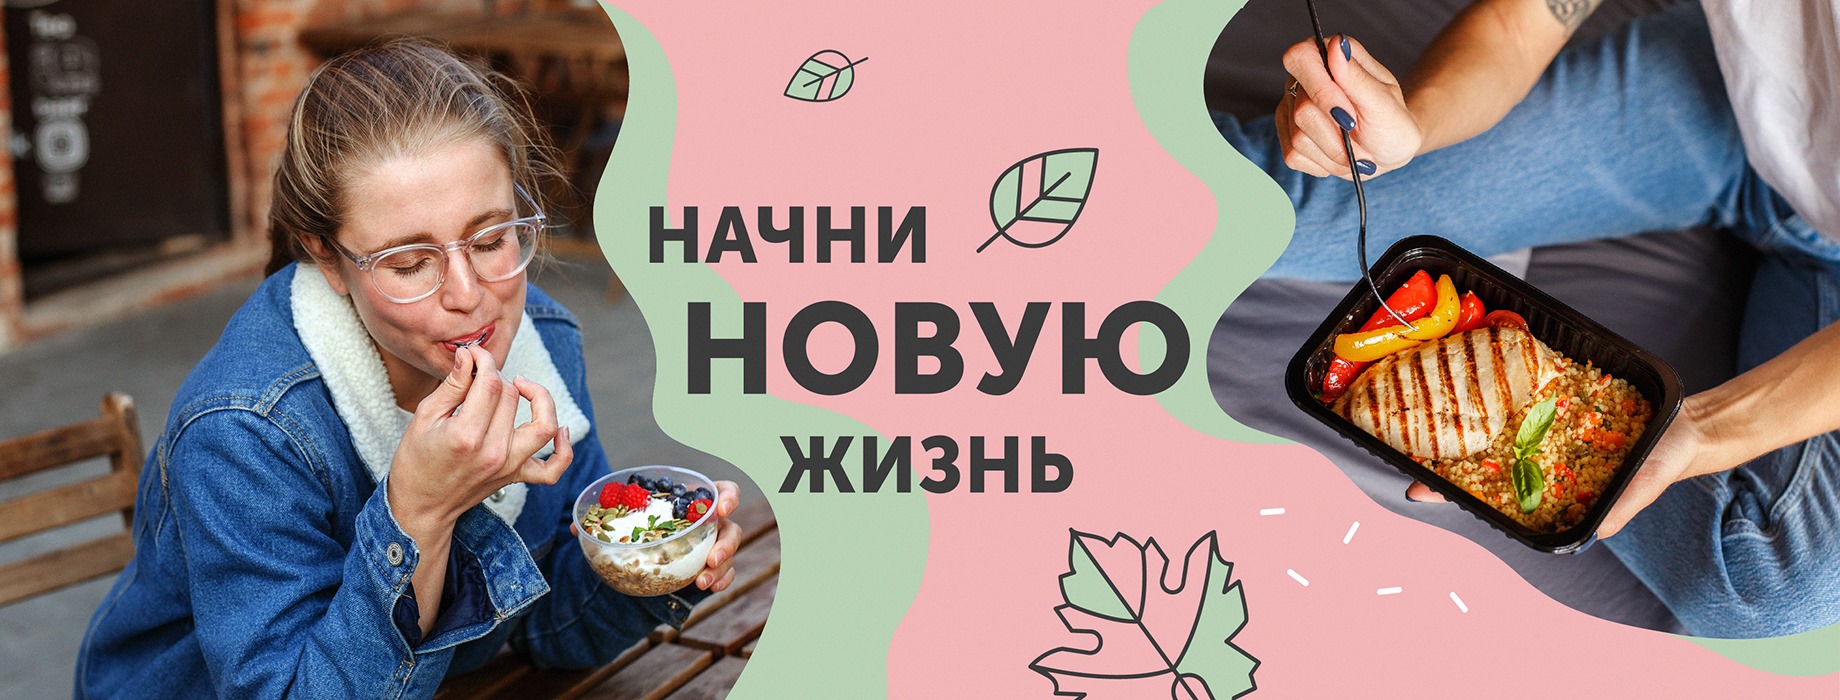 Летнее меню в Grow Food! Сохраняй бюджет и форму всего за 590 рублей в день.